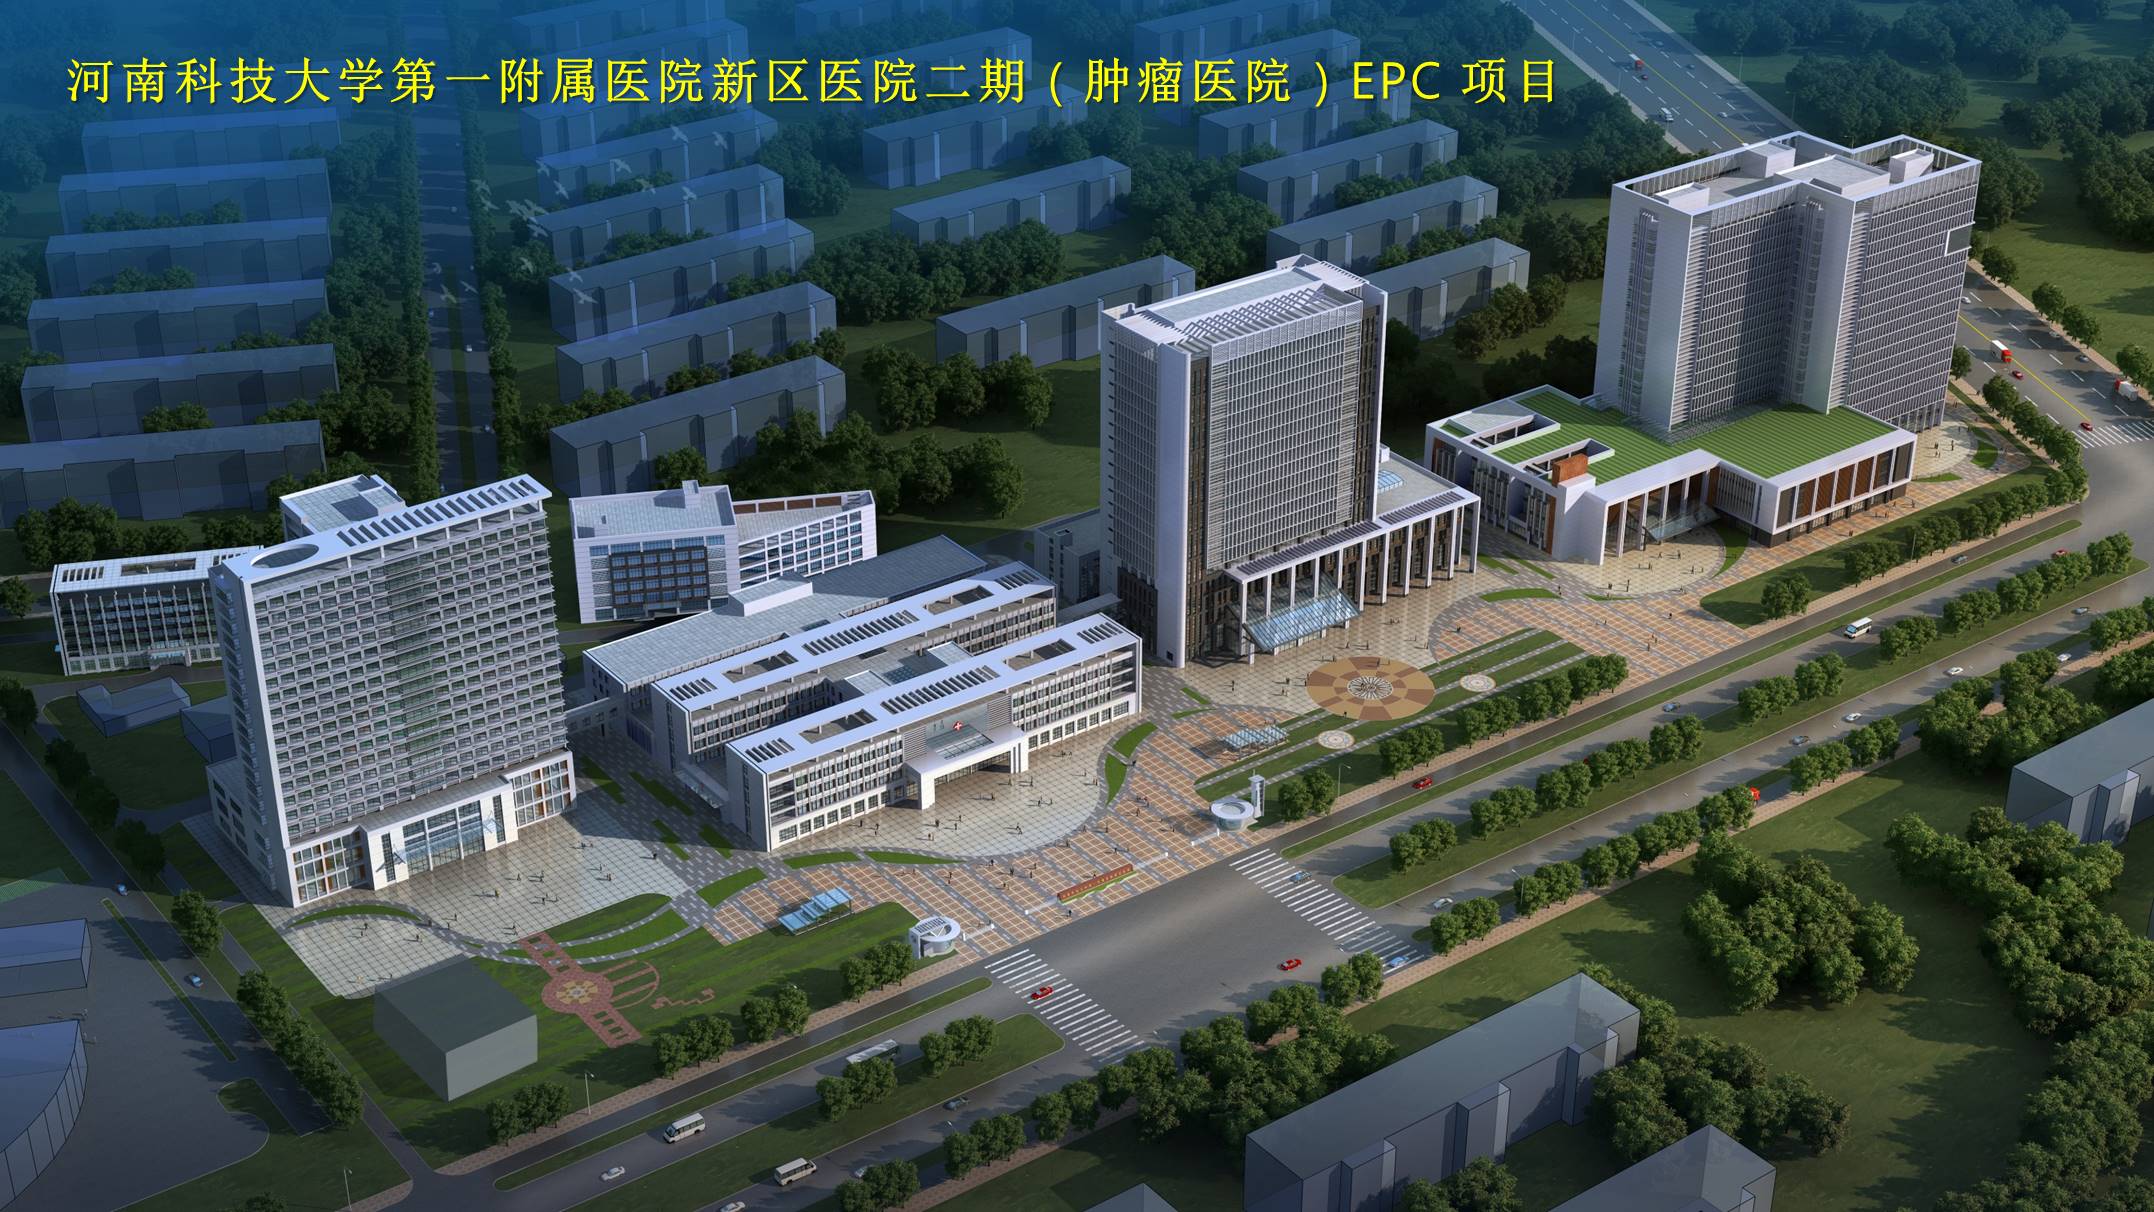 15、河南科技大学第一附属医院新区医院二期（肿瘤医院）EPC项目.jpg